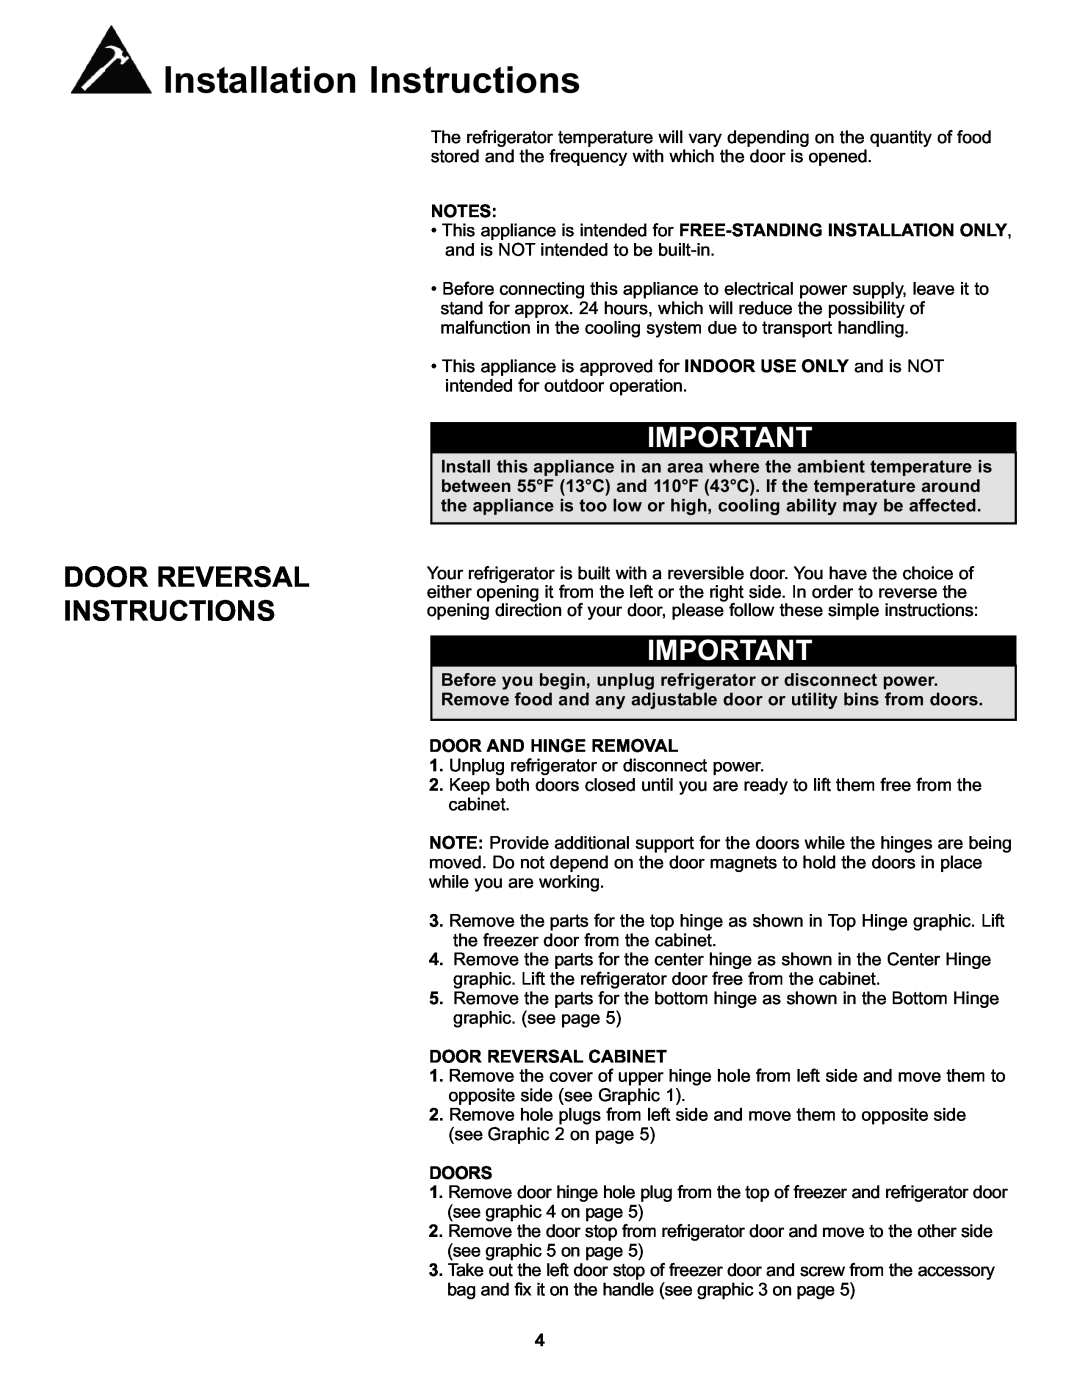 Danby DFF100A2WDB manual Door Reversal Instructions, Door And Hinge Removal, Door Reversal Cabinet, Doors 